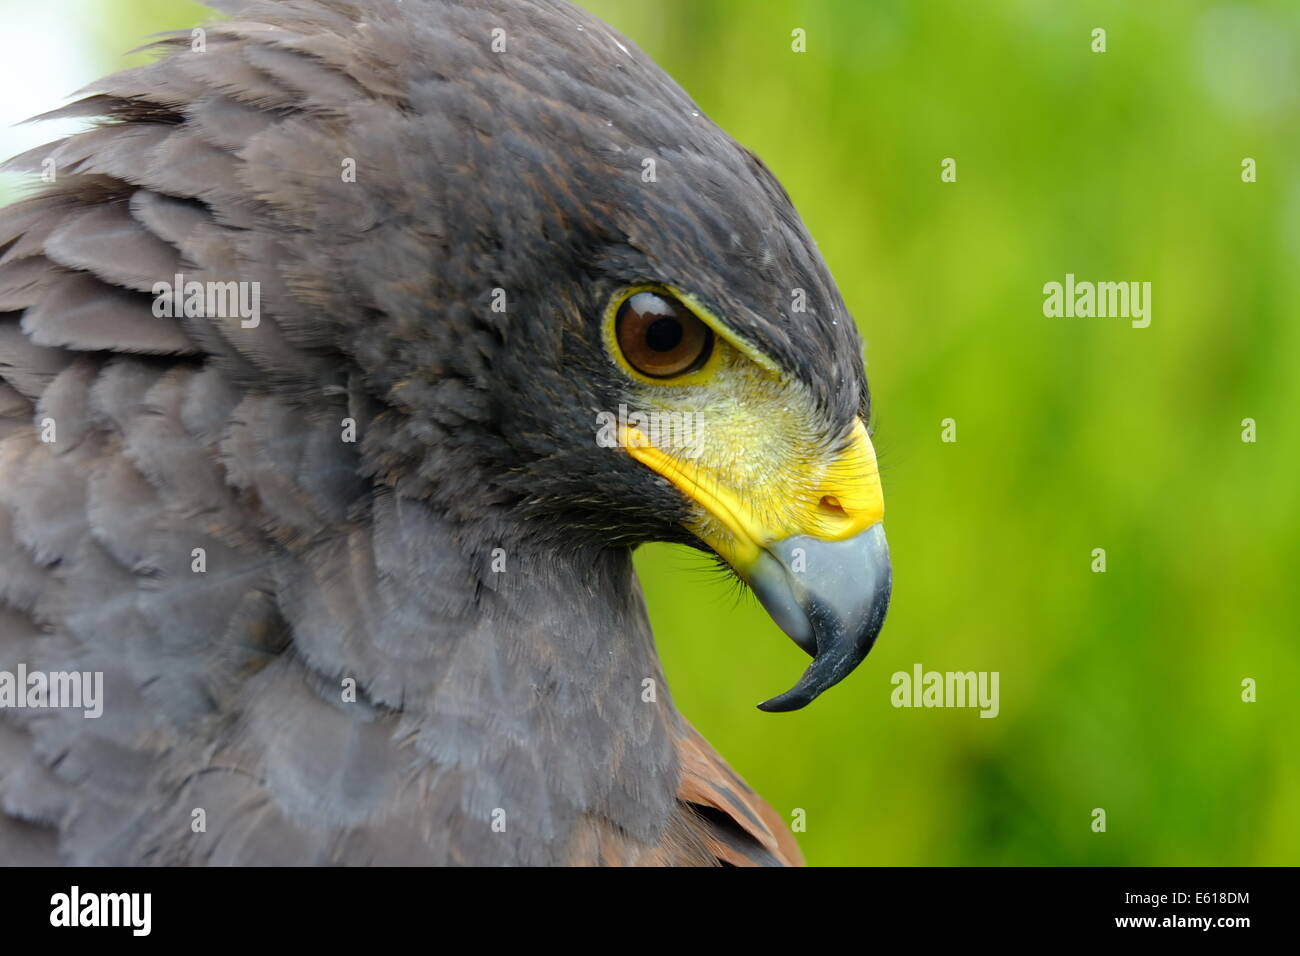 yellow hawk bird